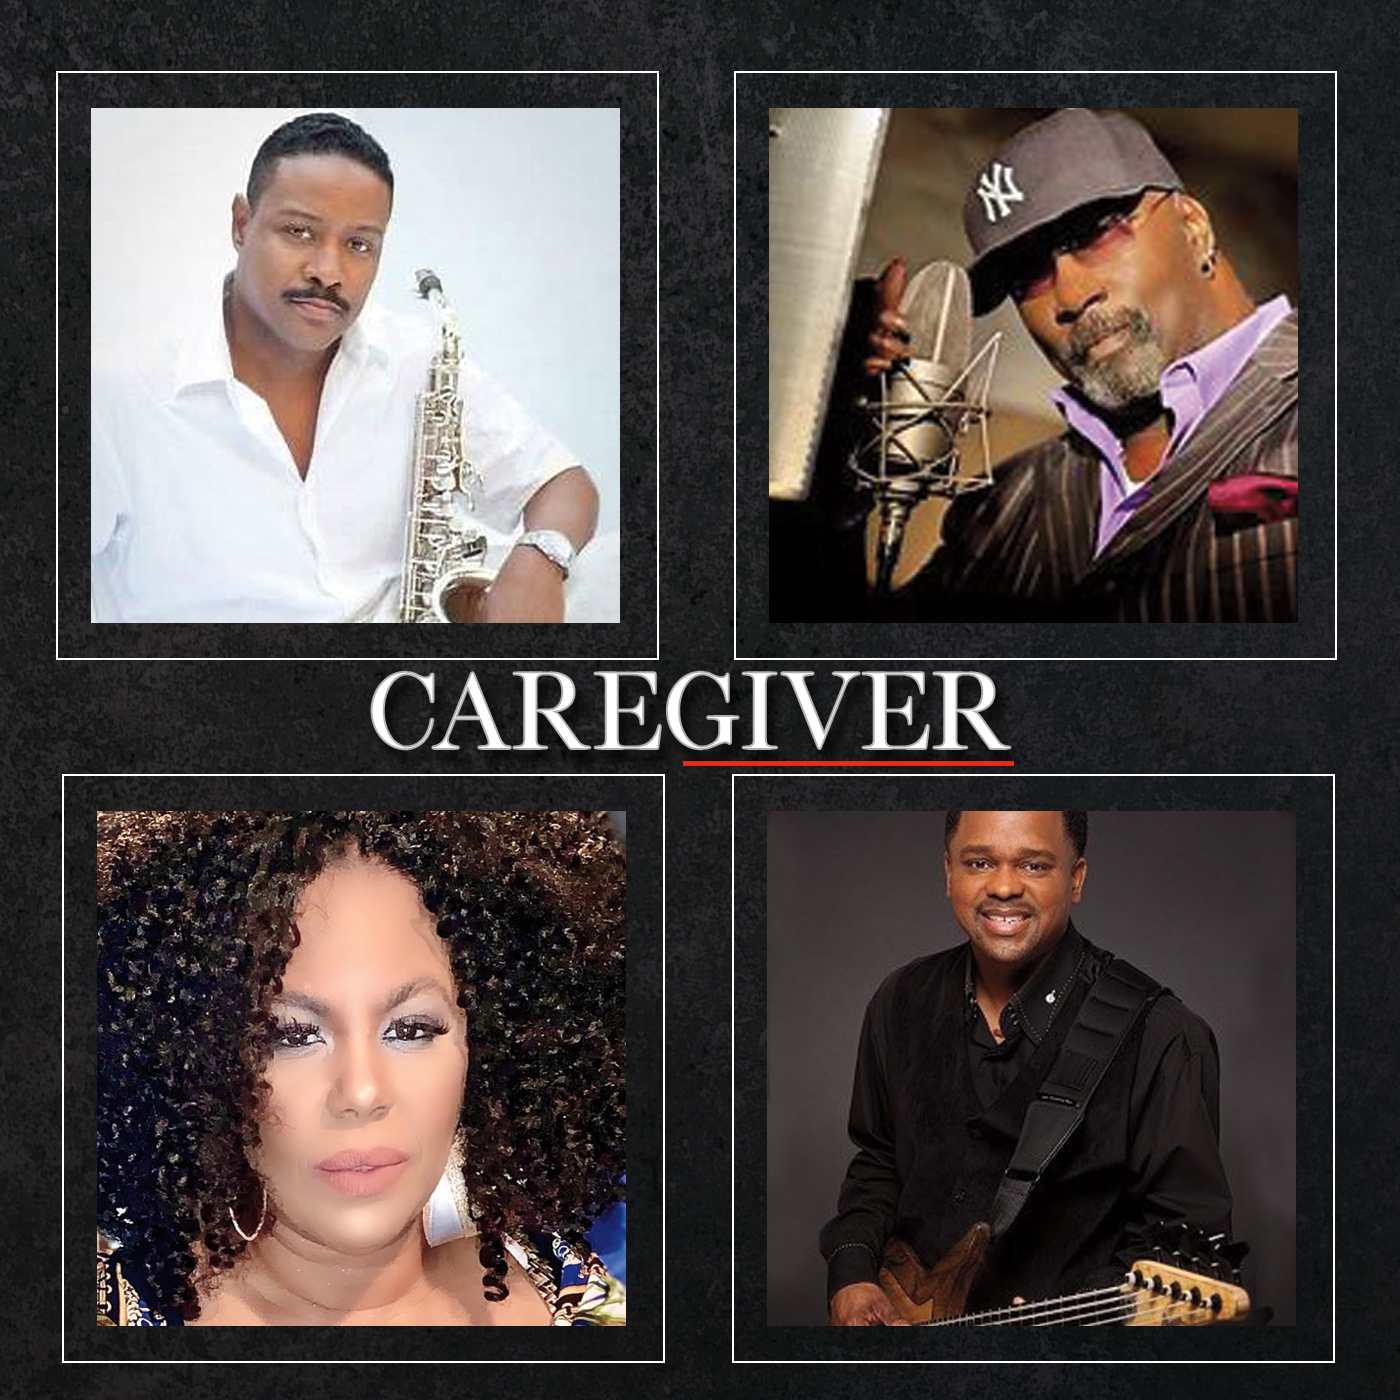 Art for Caregiver ft. Kim Waters & Mark Walker by Chris 'Big Dog' Davis